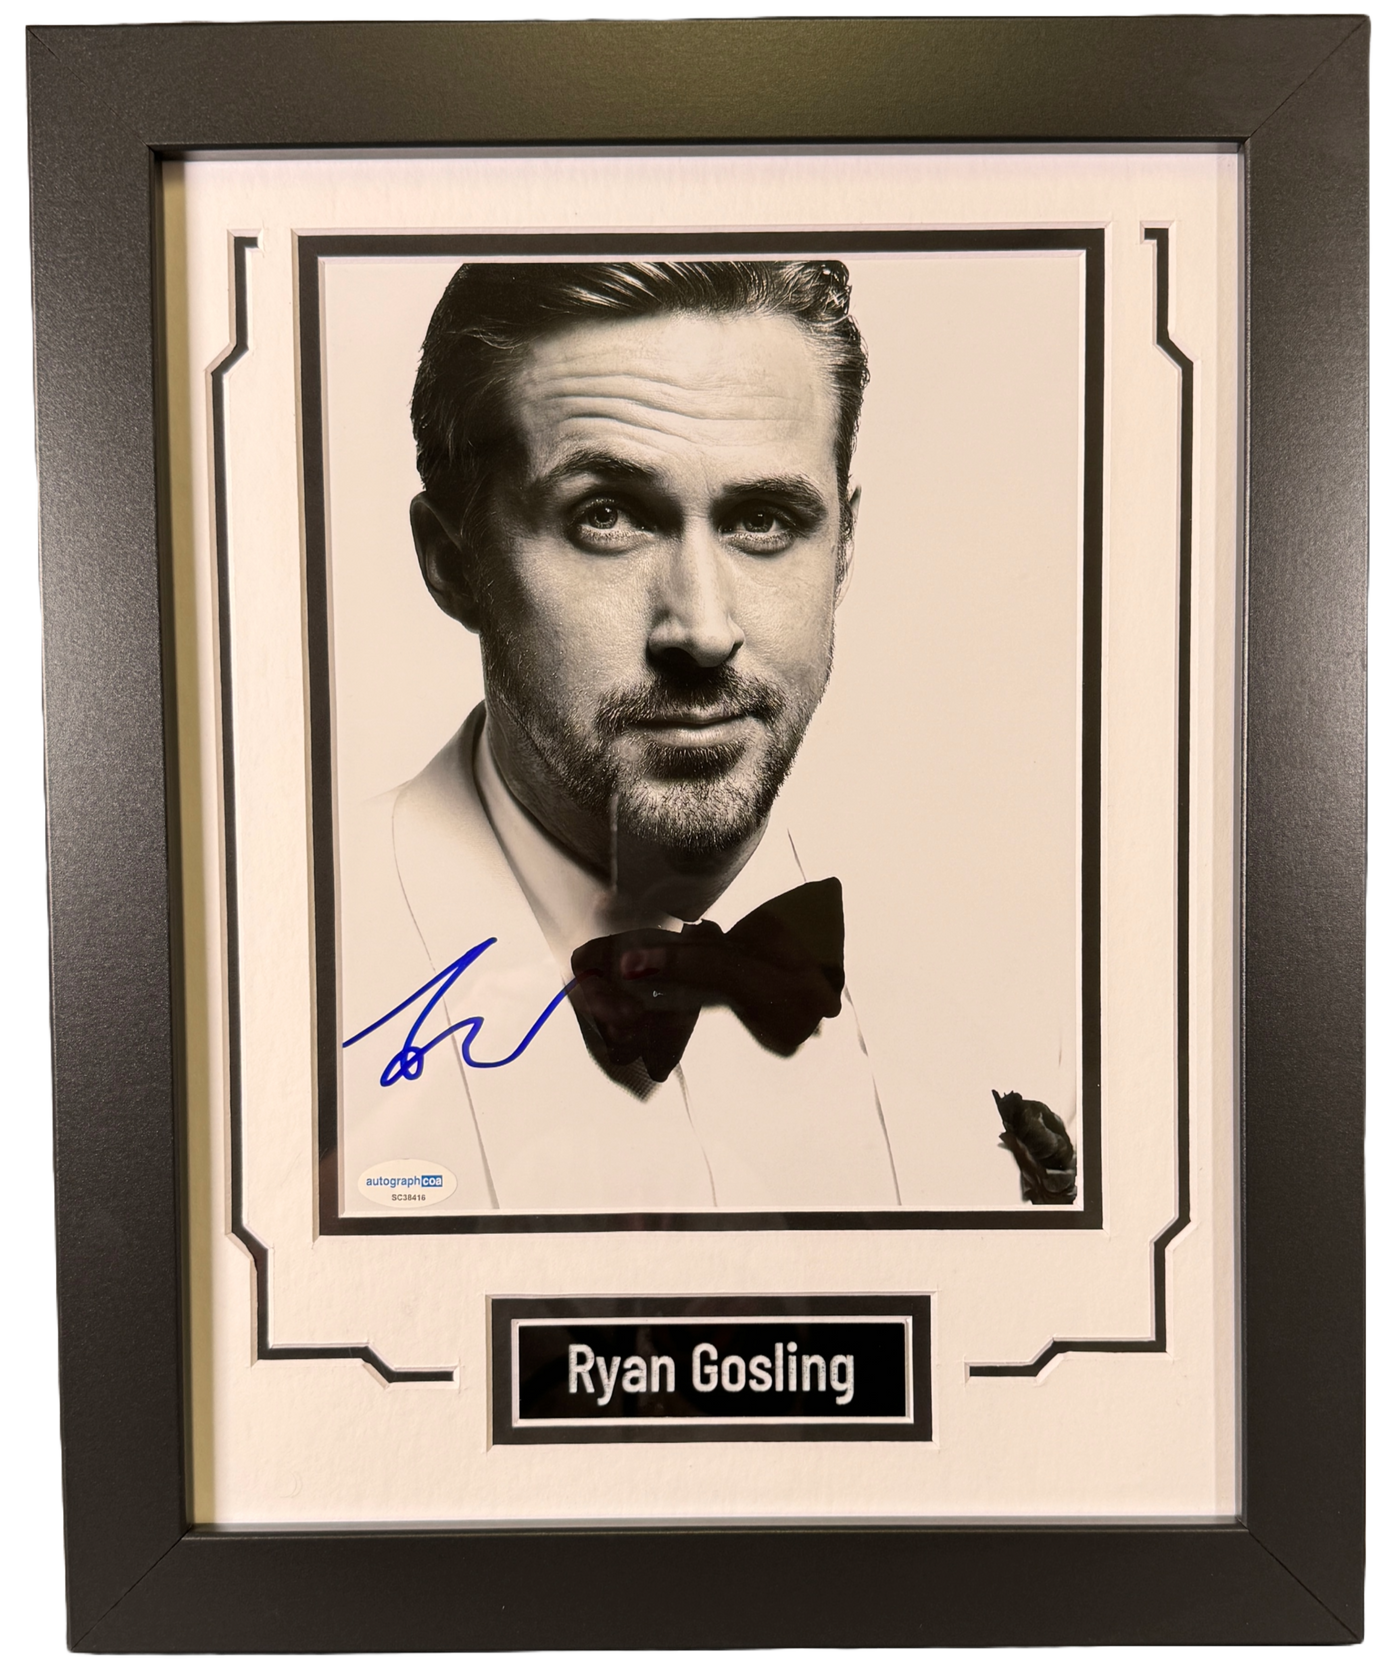 Ryan Gosling Signed & Custom Framed 8x10 Photo Authentic Autographed ACOA